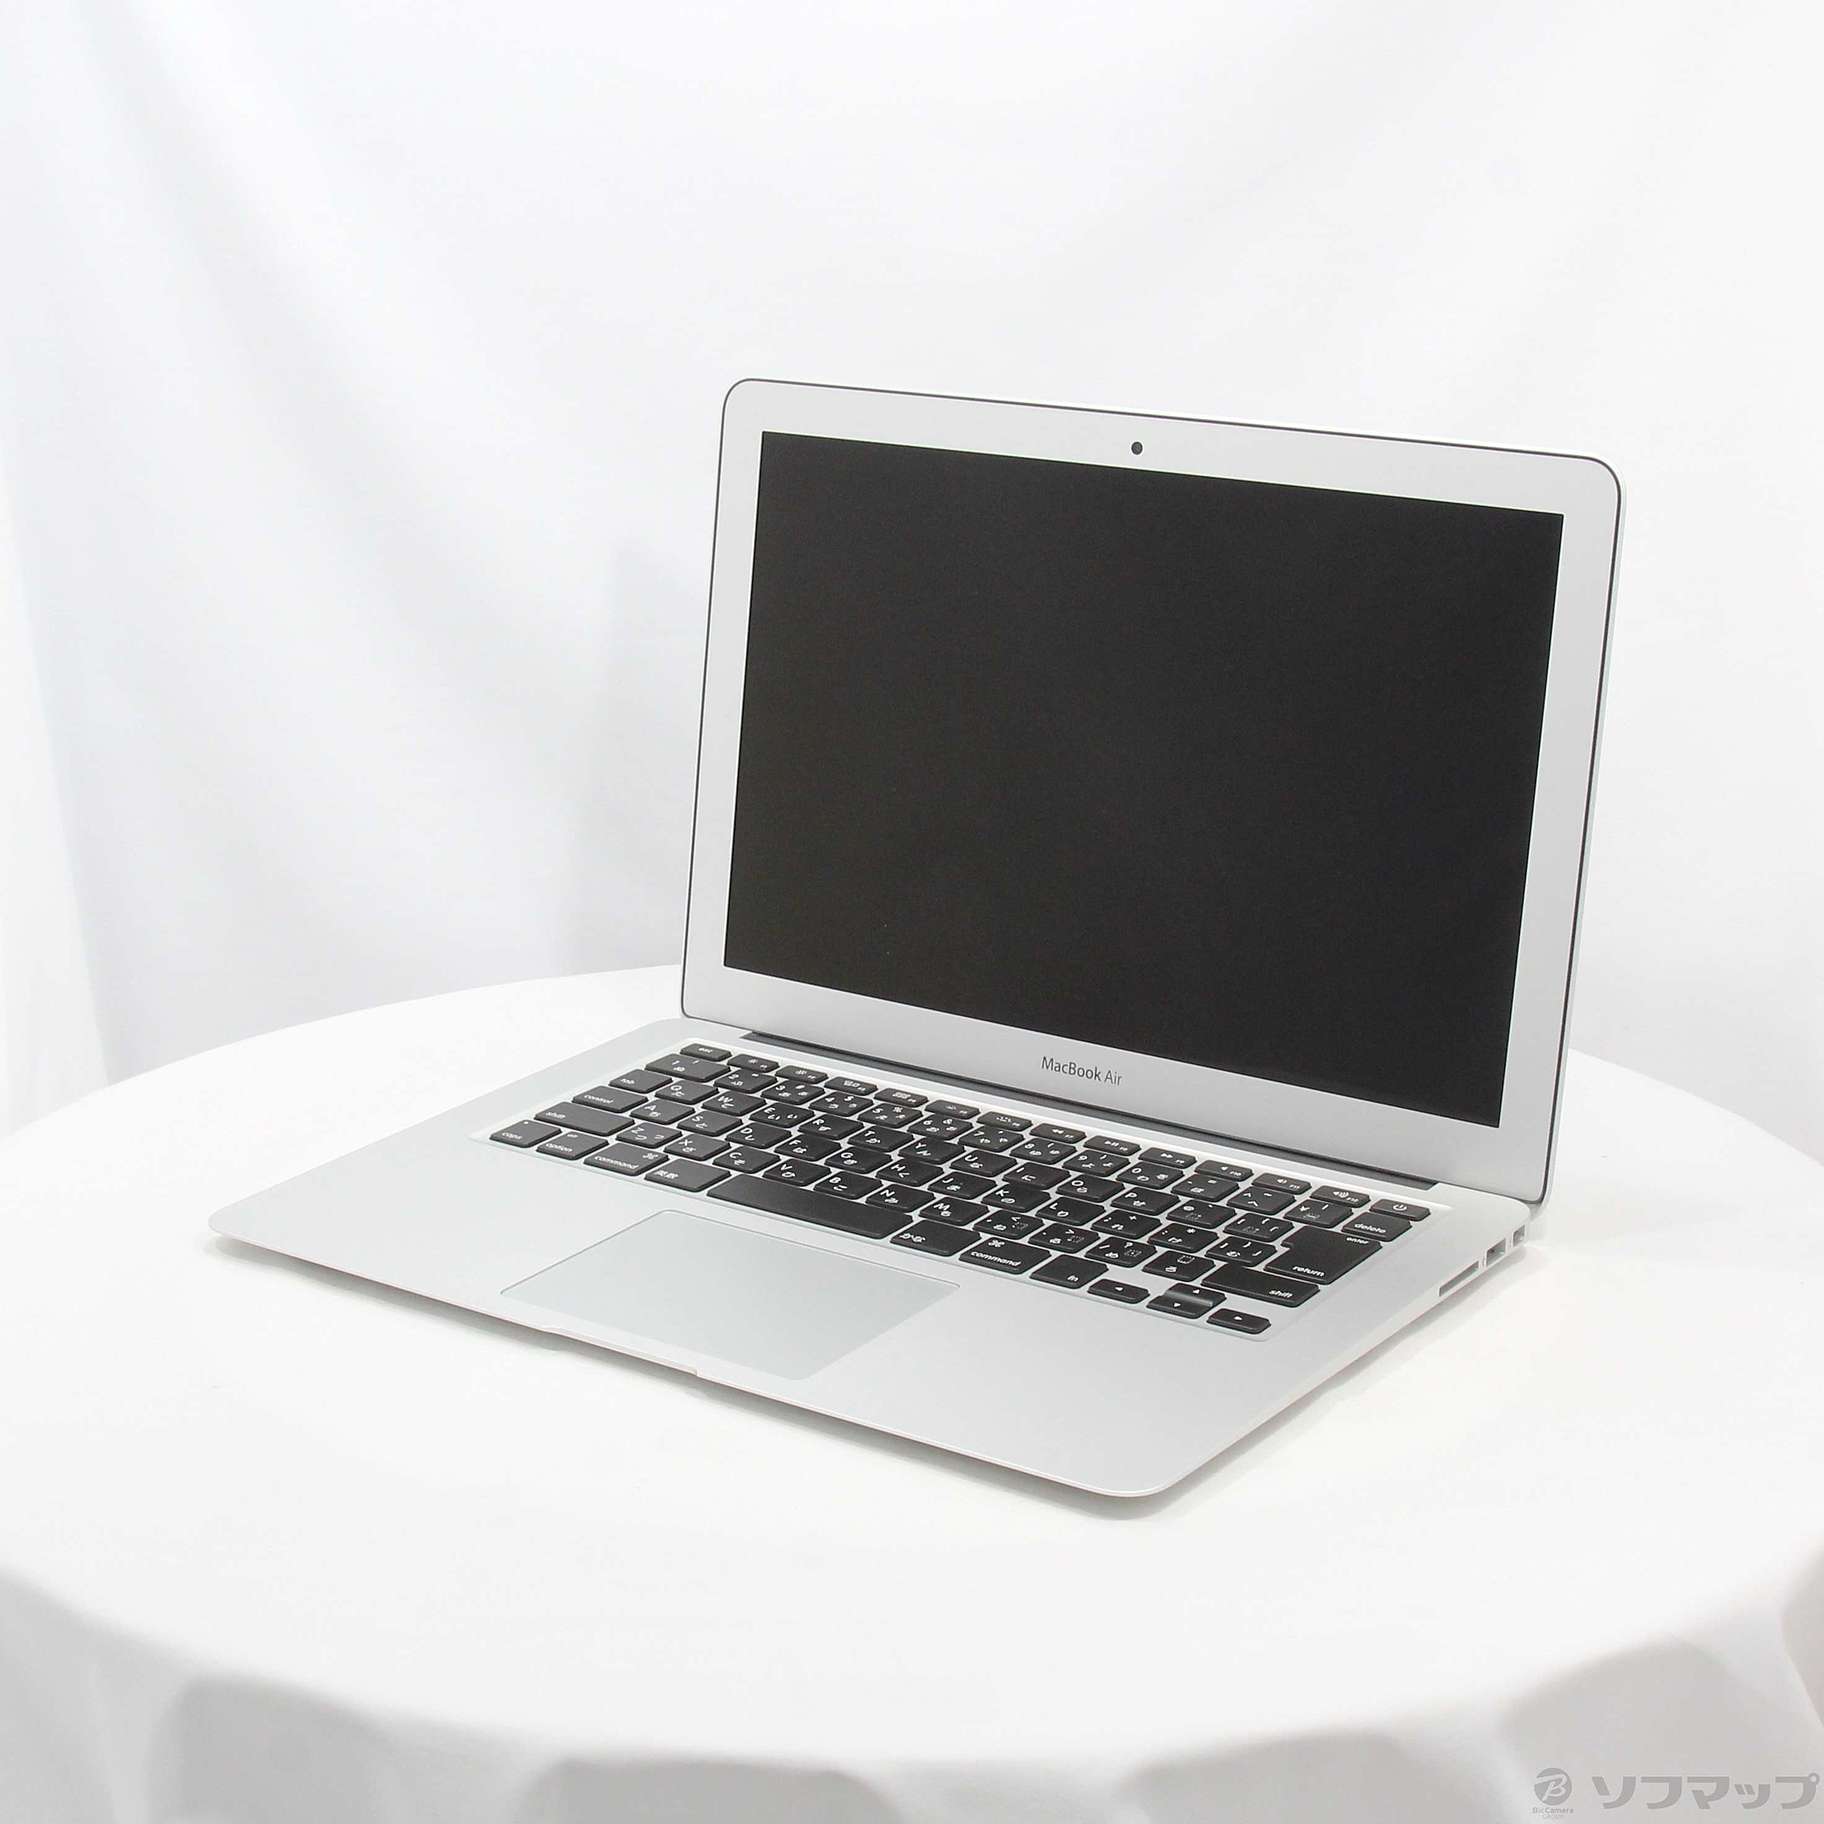 6,930円MacBook AIR13in 2015